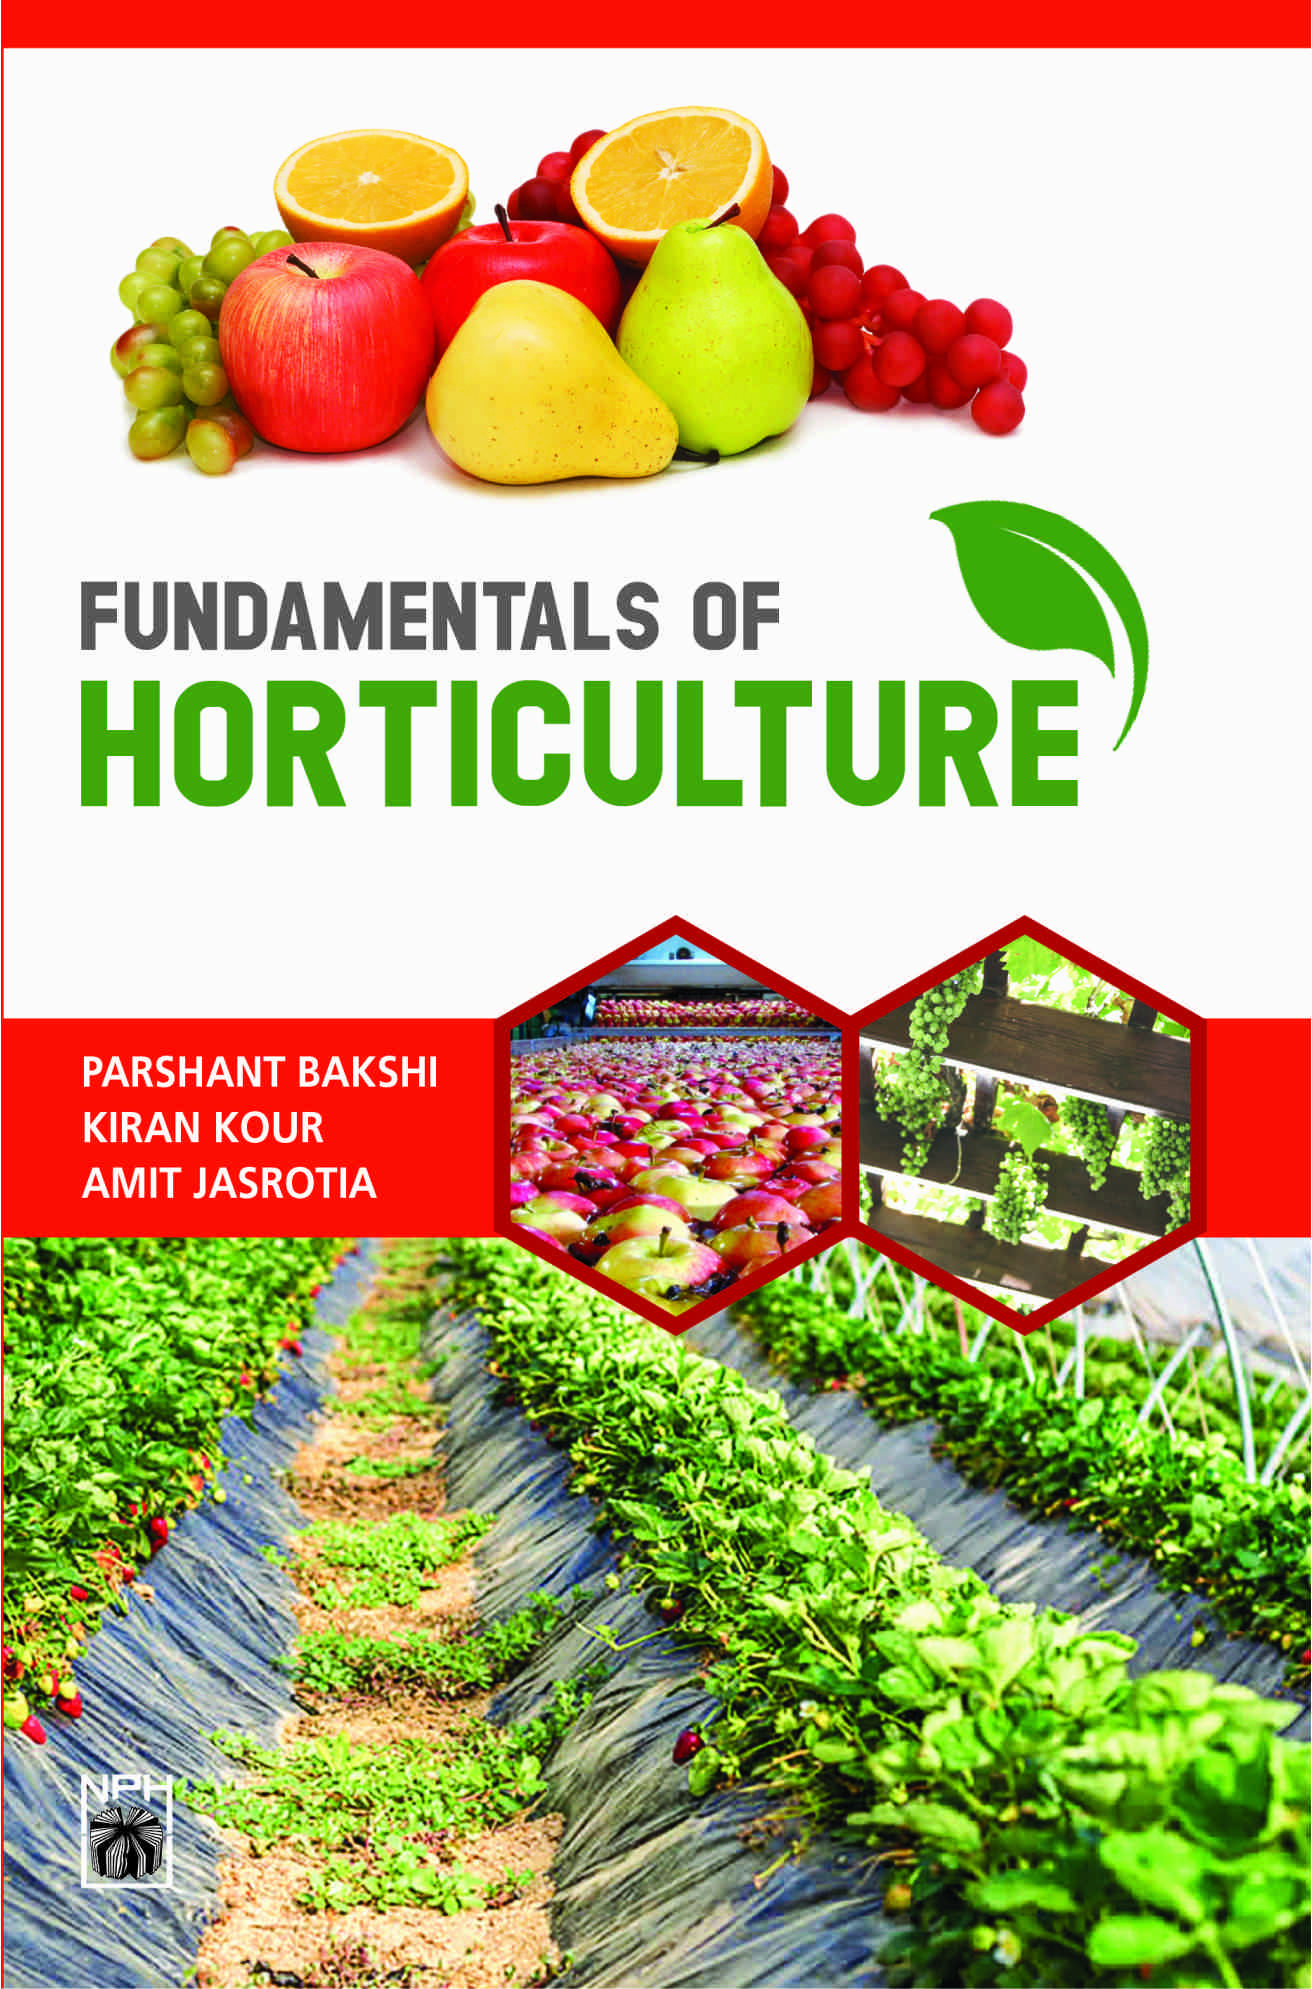 horticulture term paper topics